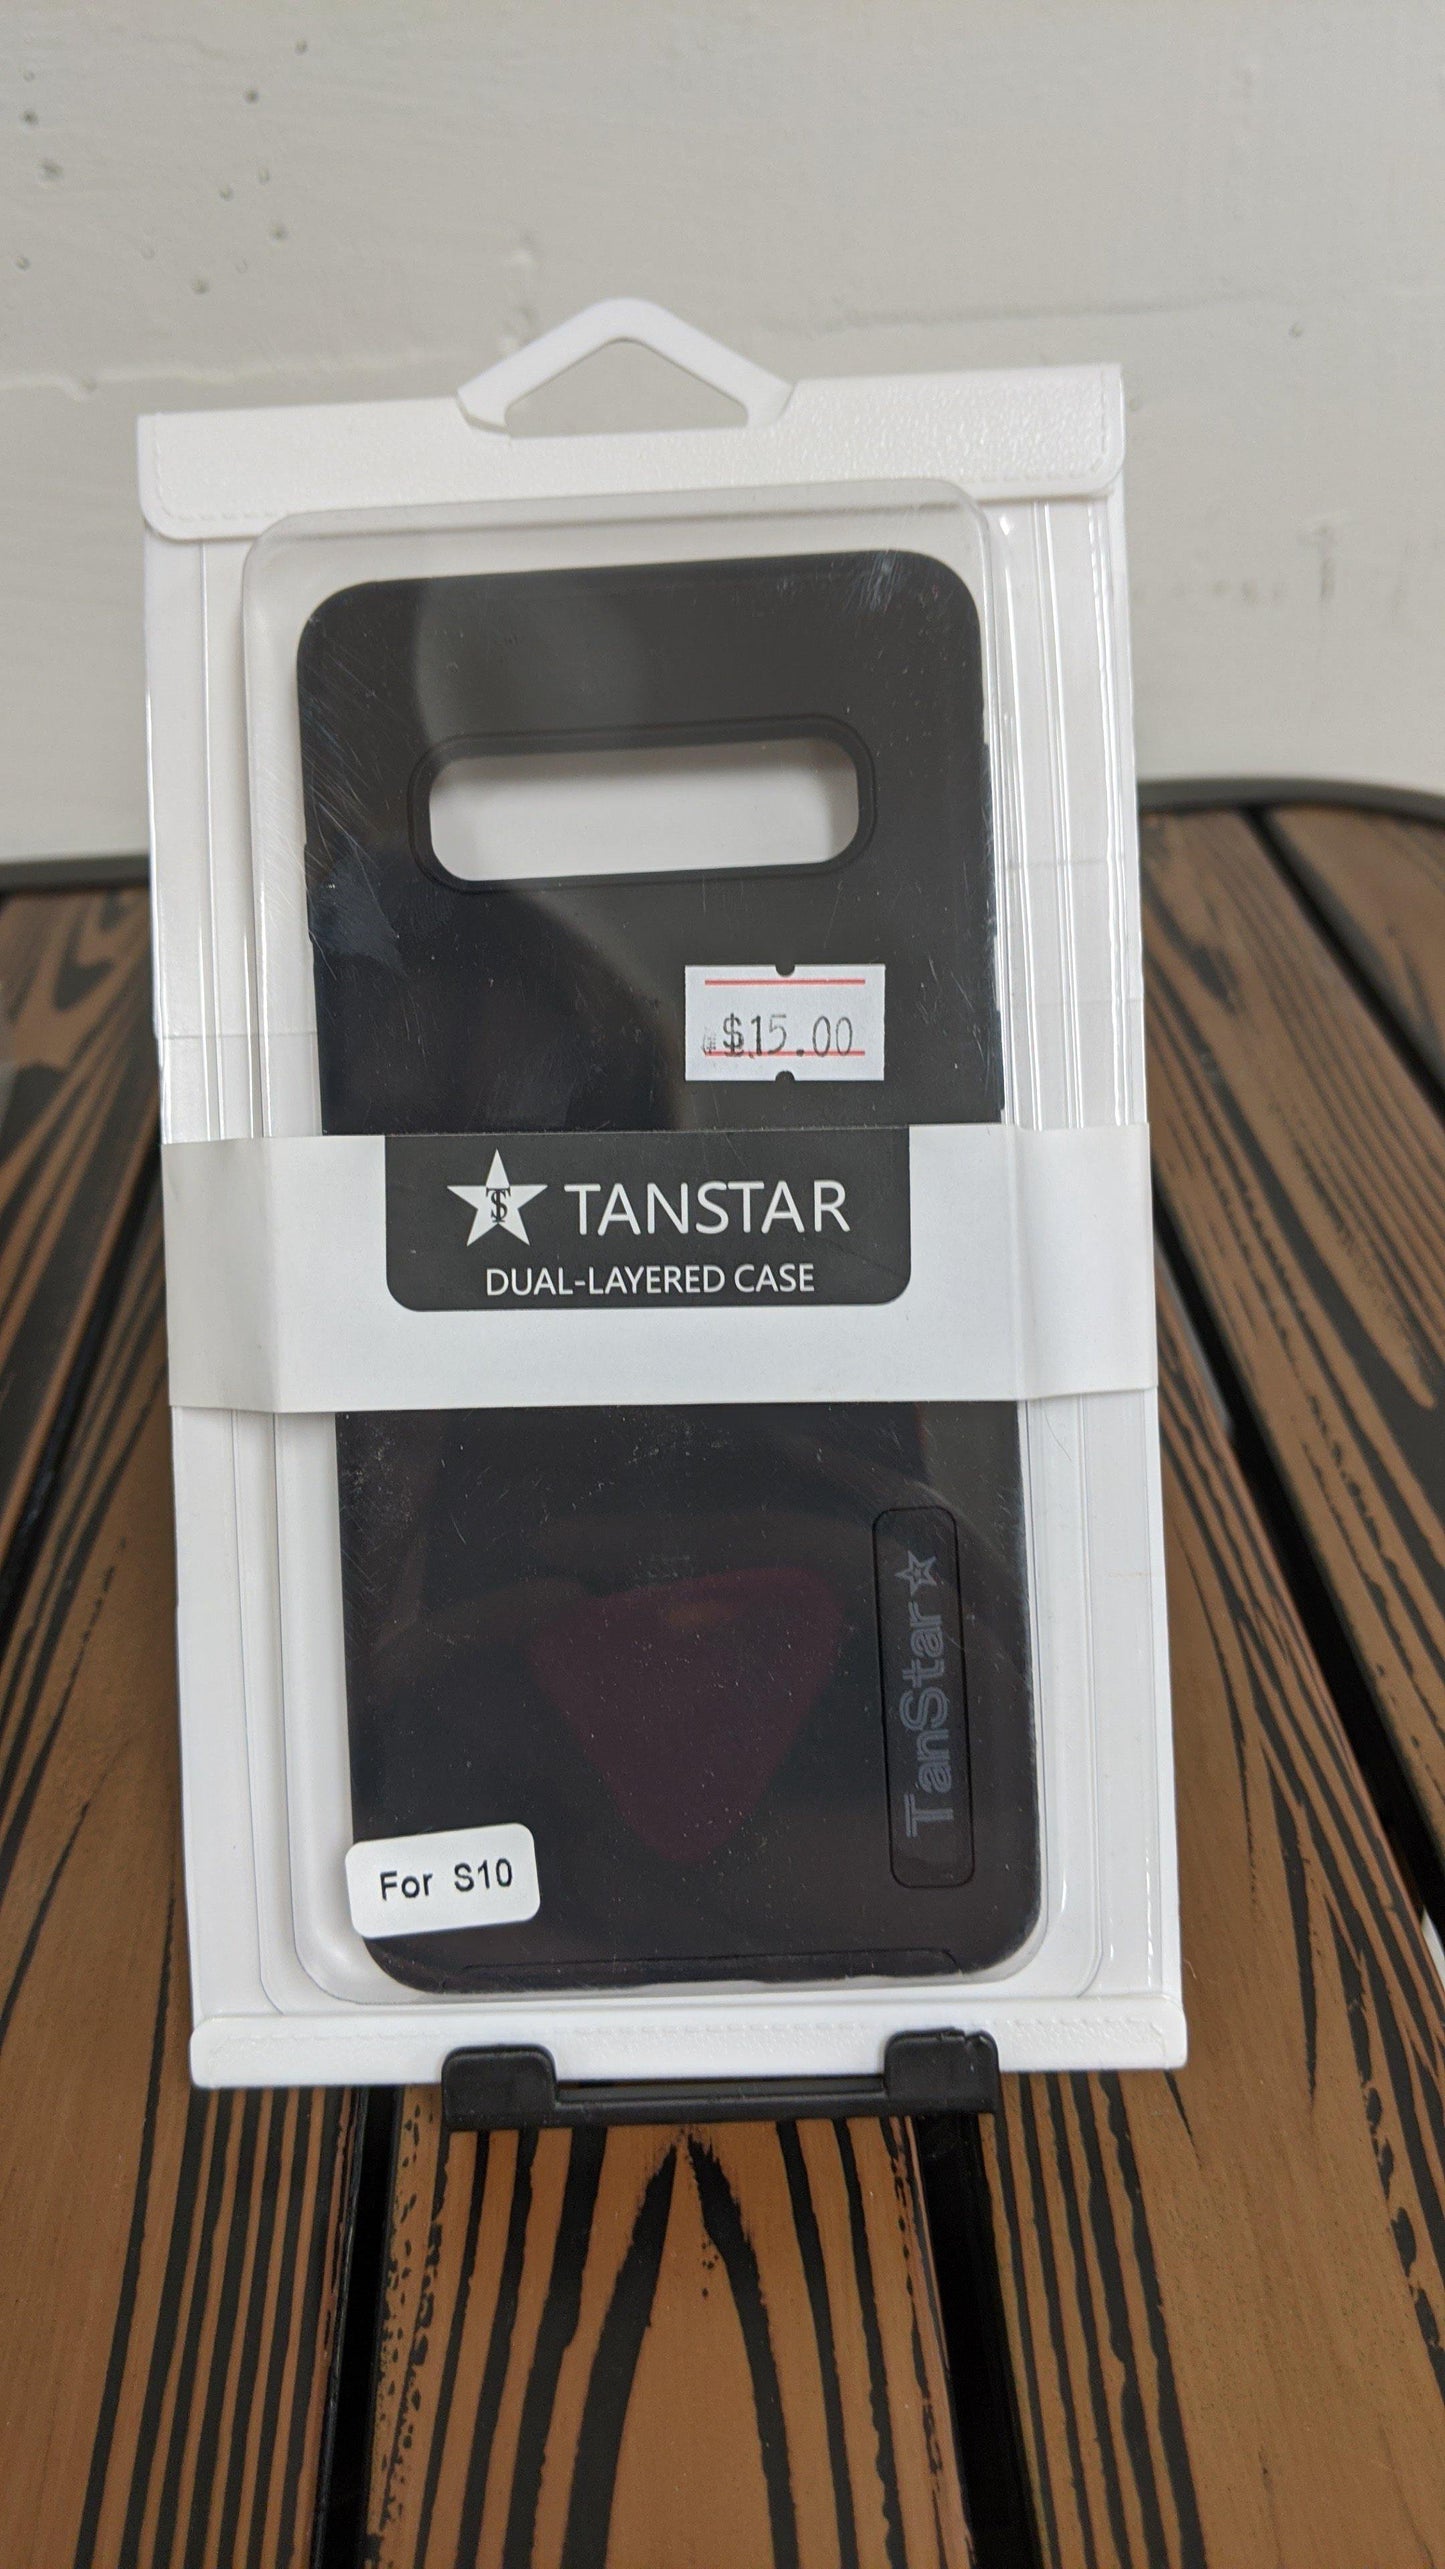 Tanstar Samsung S10 - PCMaster Pro 